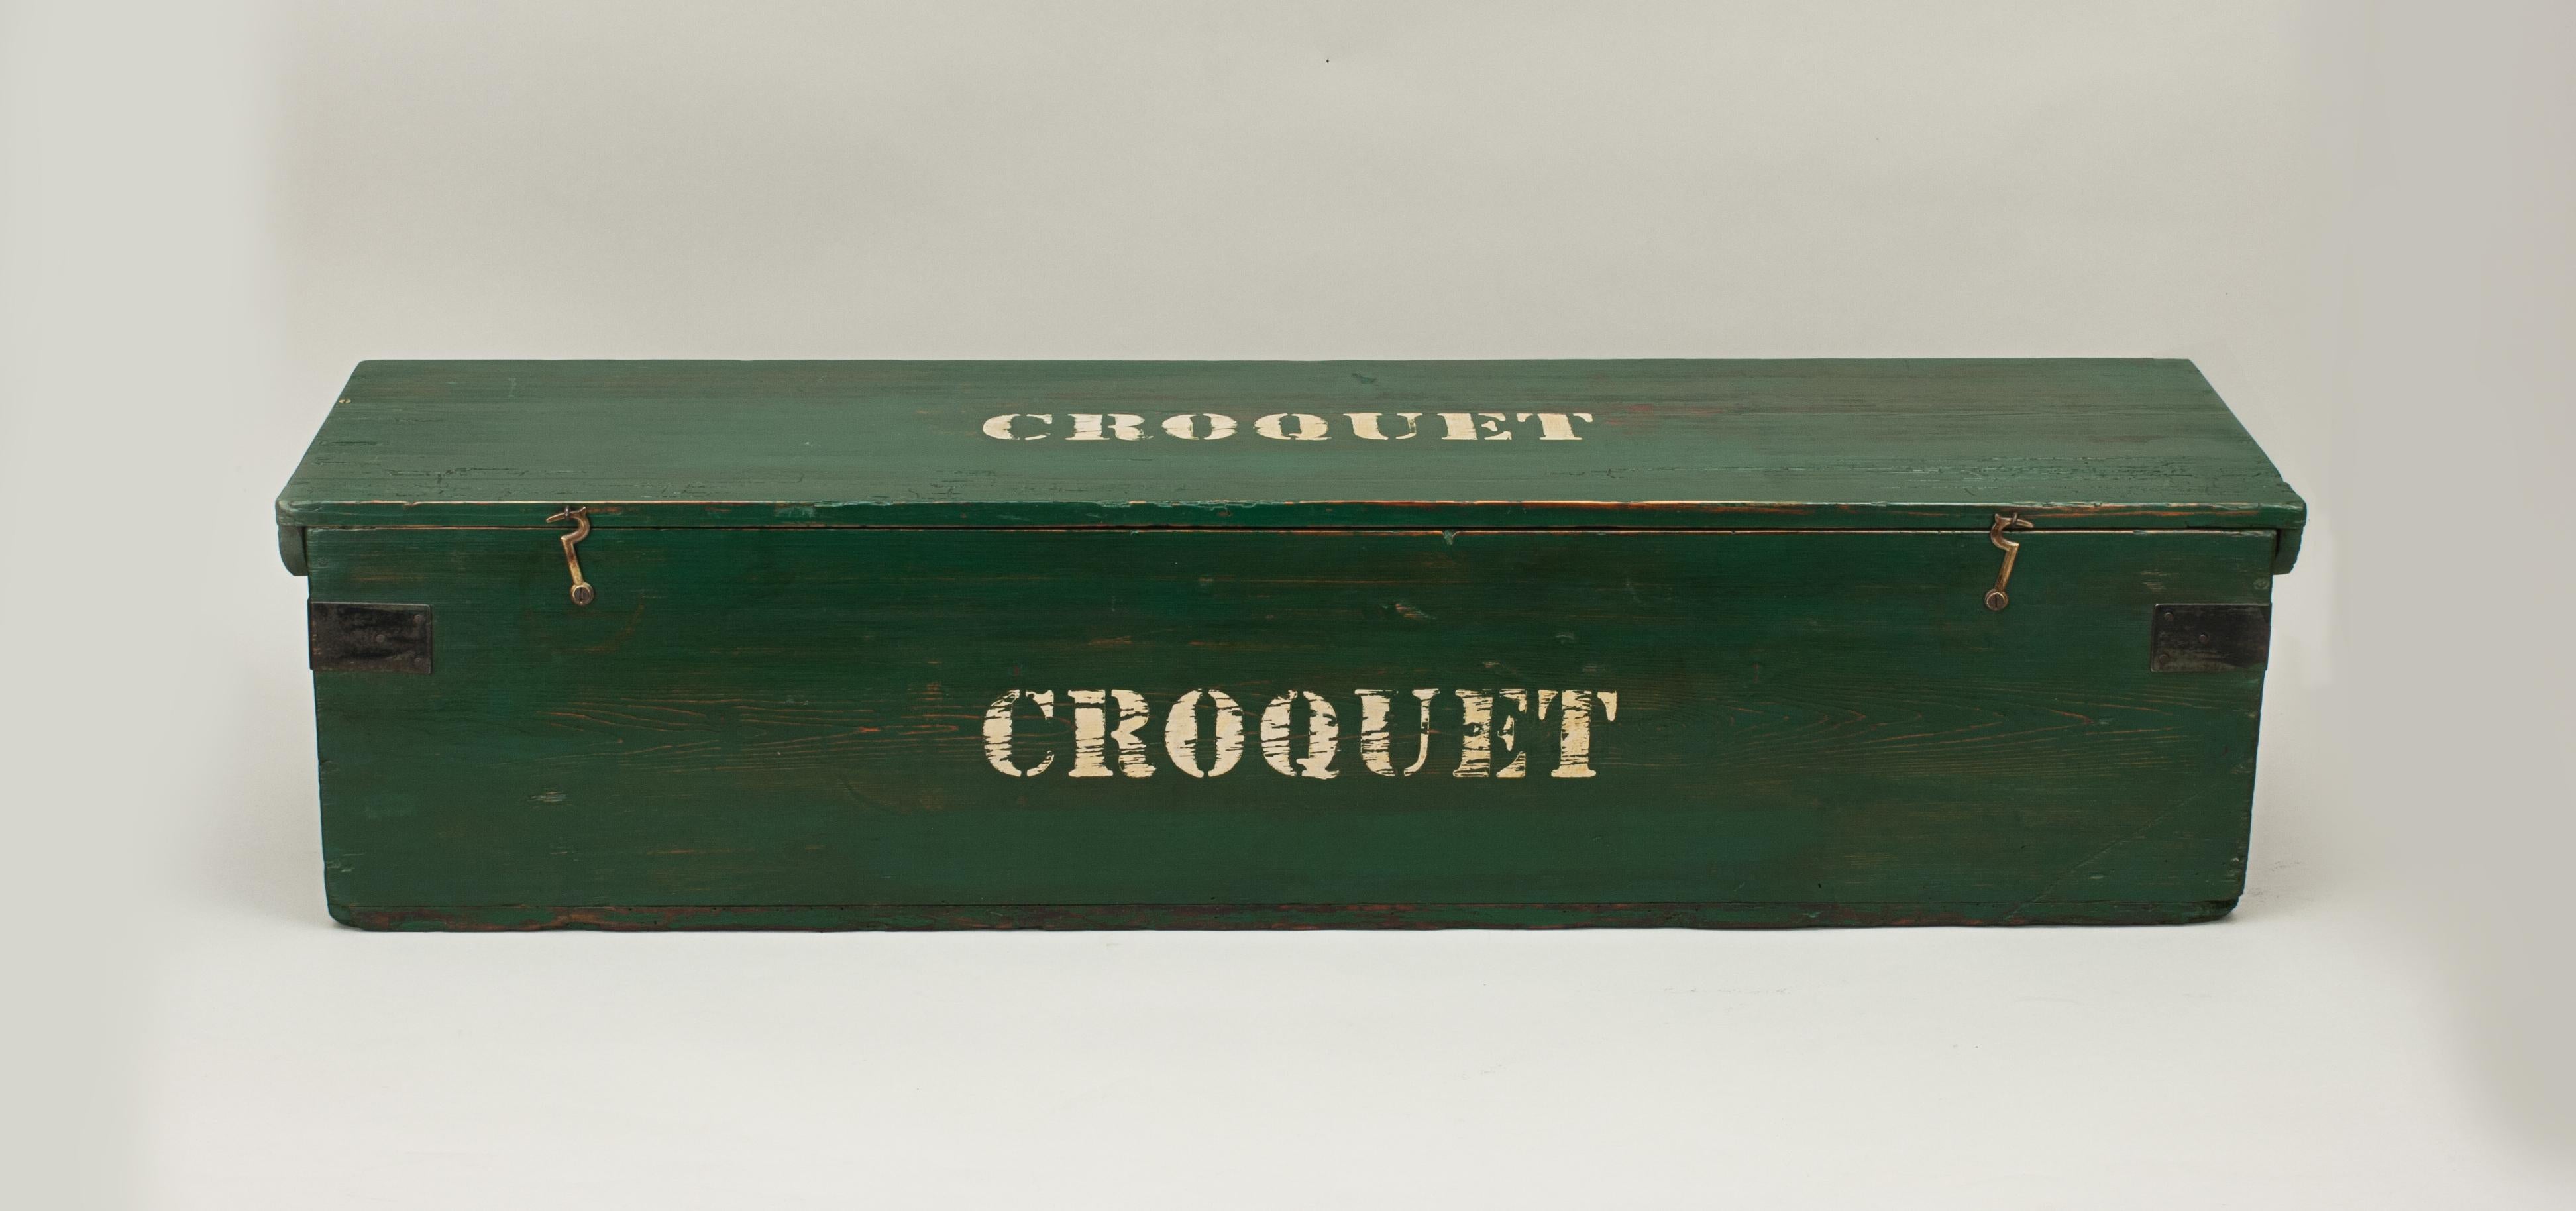 Bateman Stroud Regulation Croquet Set in Pine Box 5